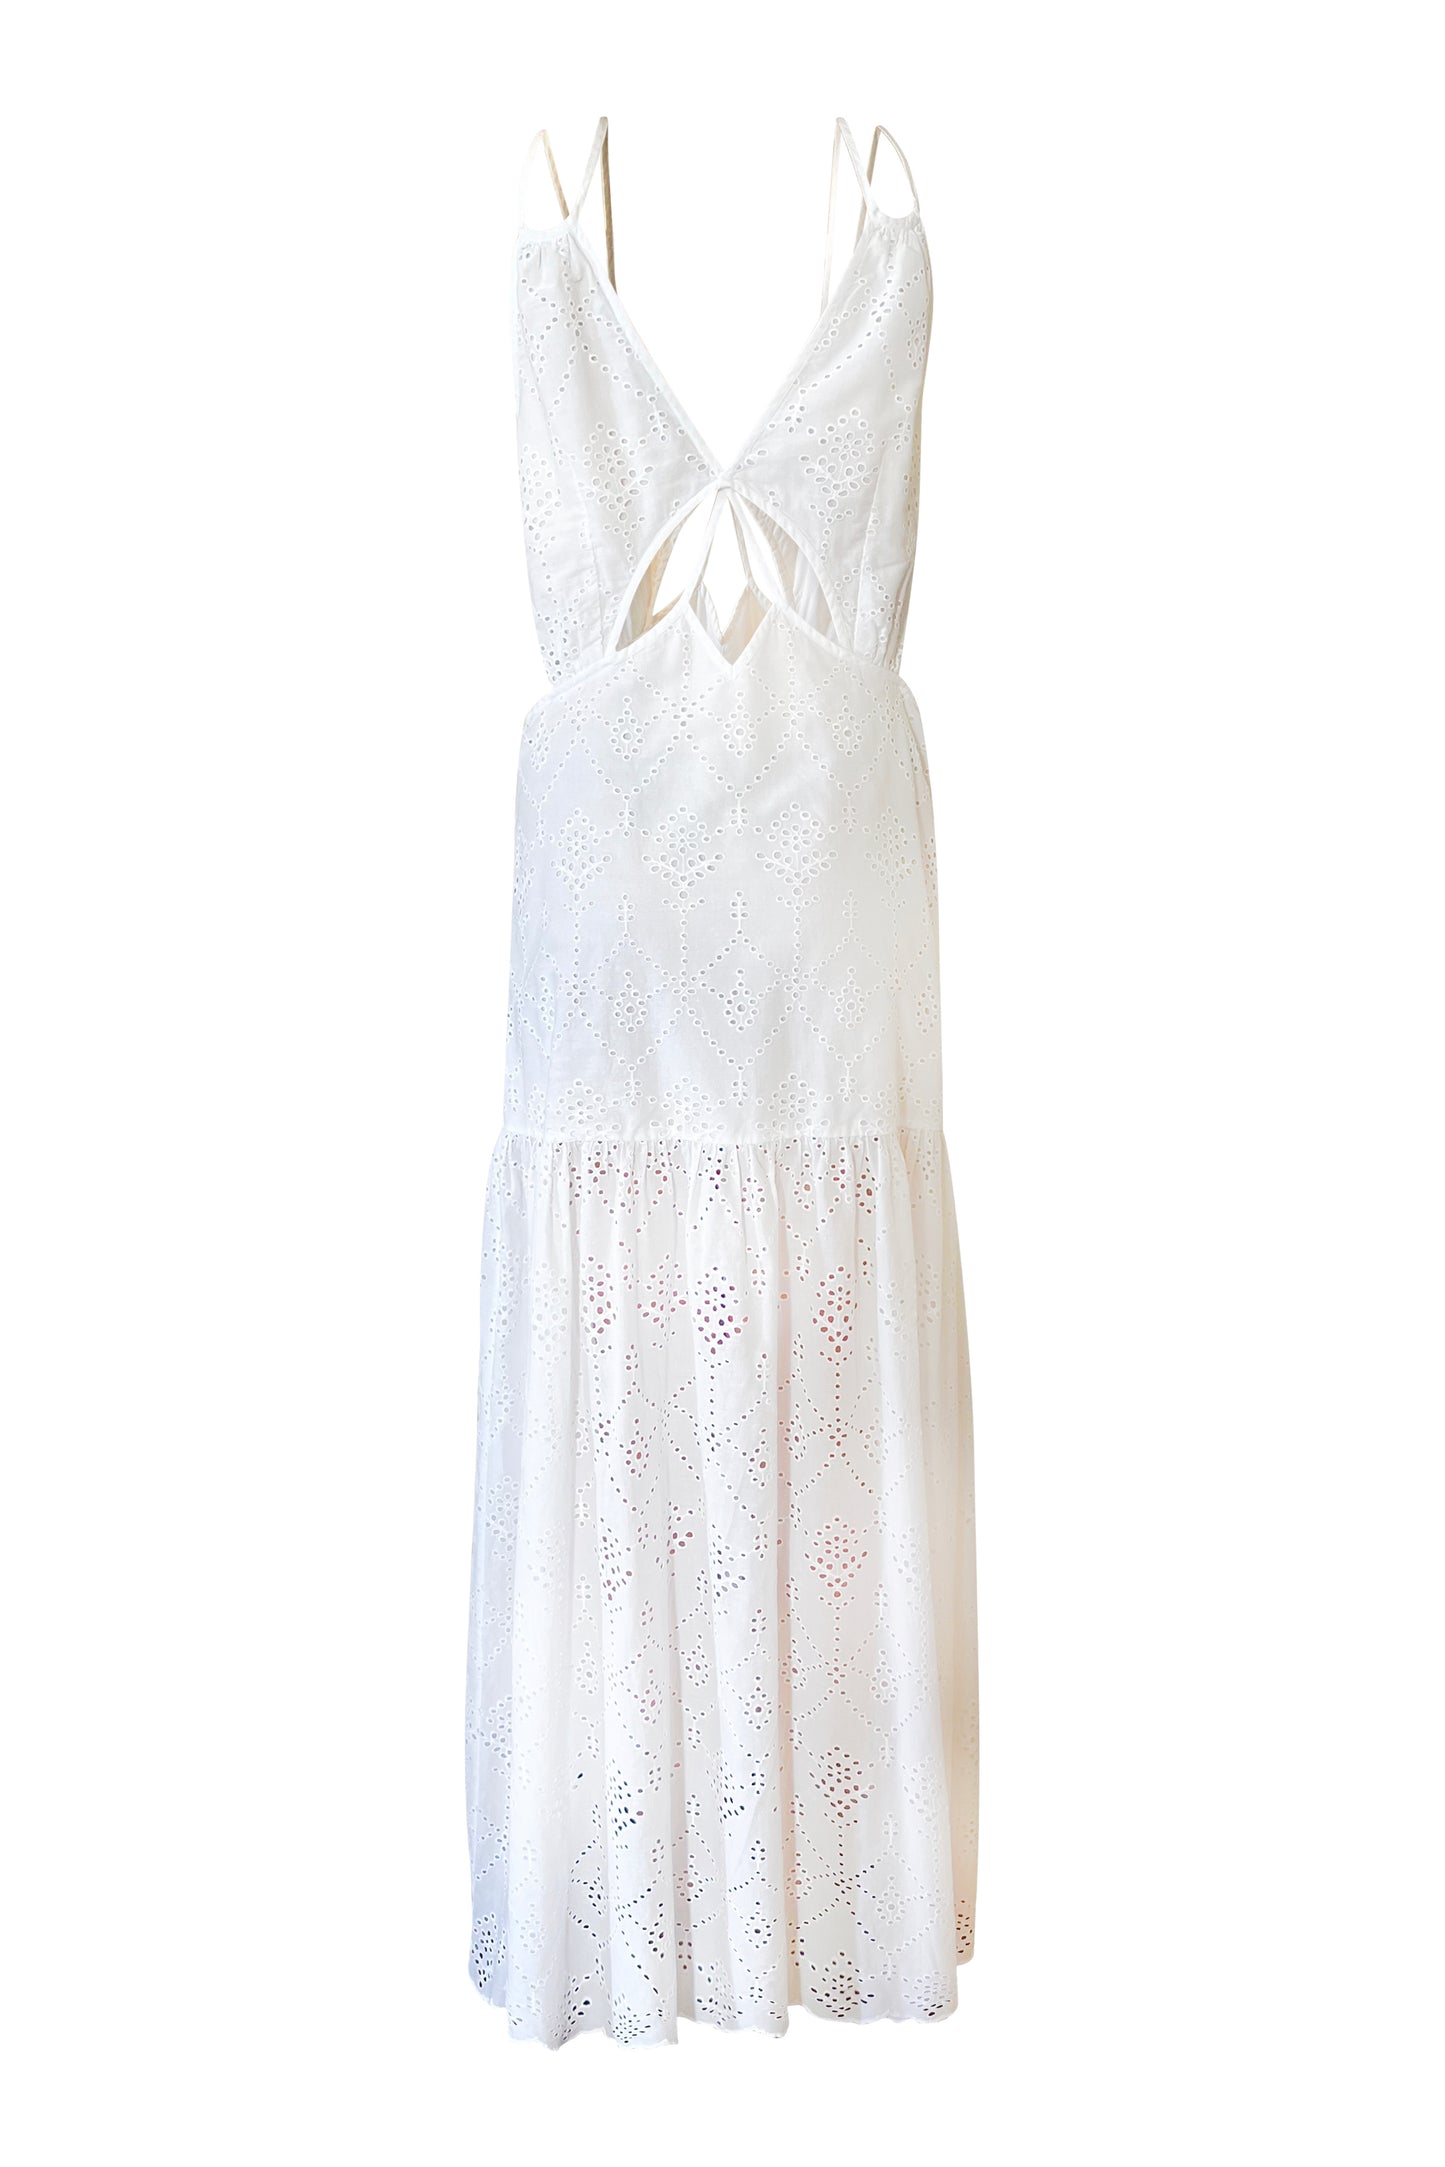 Calypso - White Dress